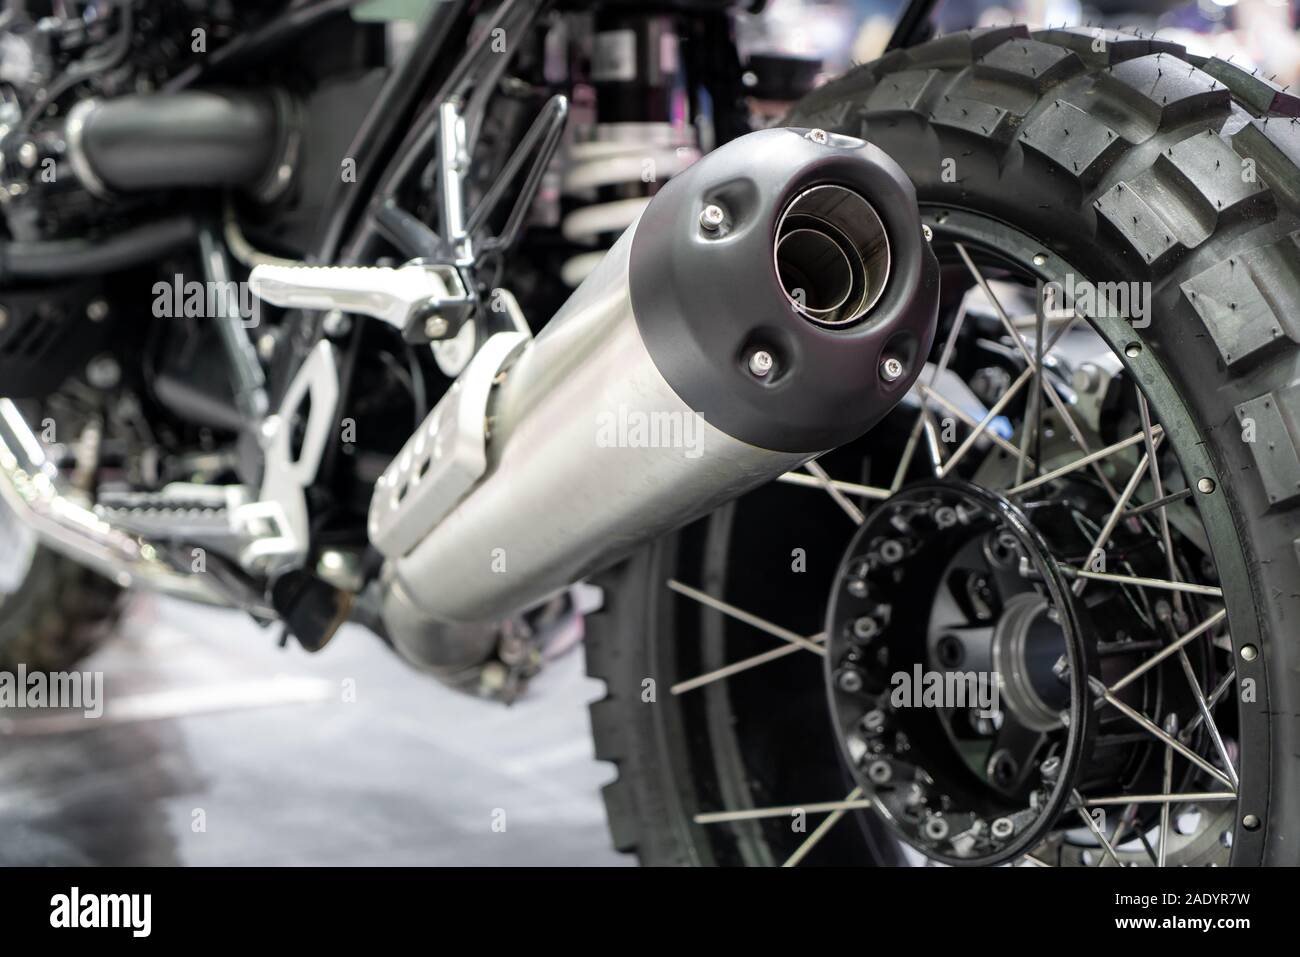 Close-up von Auspuff oder Einnahme von schwarz Sport racing Motorrad mit neuen Reifen und Rad im Showroom. Niedrigen Winkel Foto von Motorrad. Stockfoto